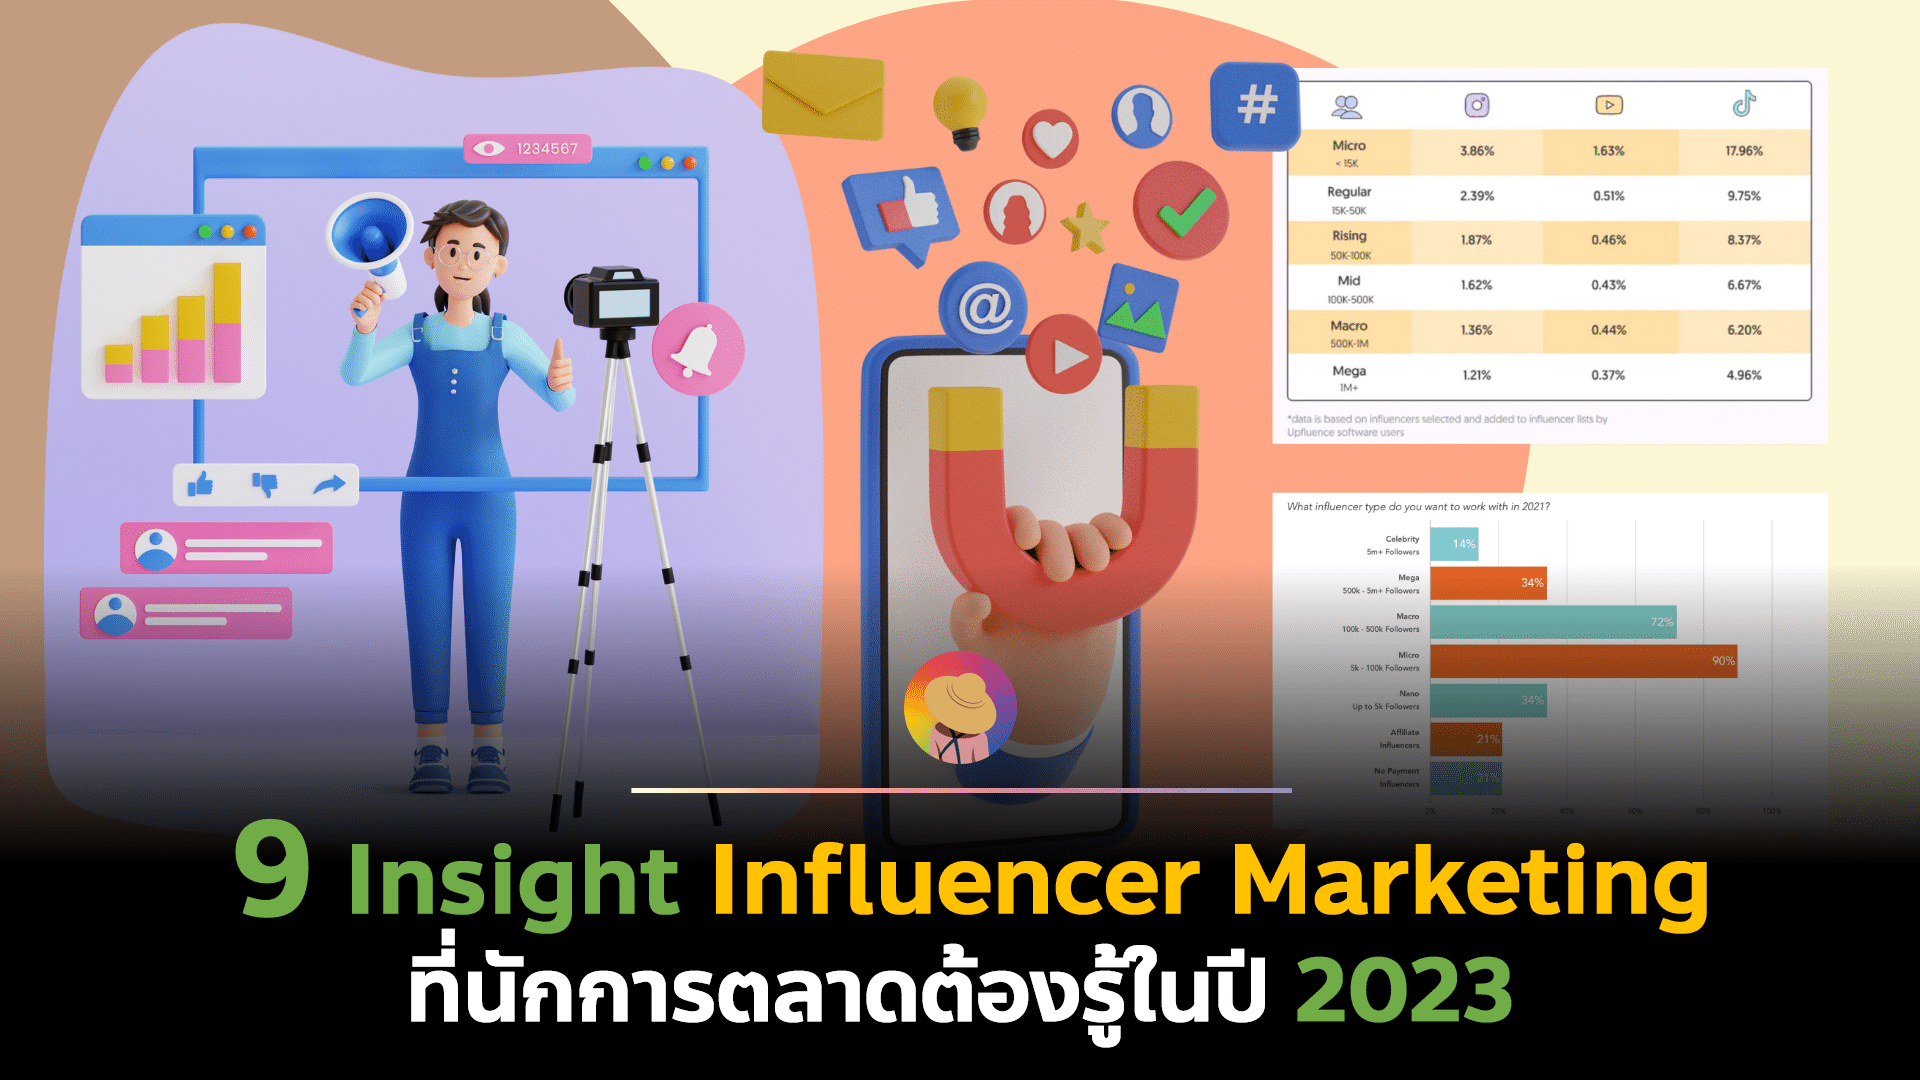 รวม 9 Insight Influencer Marketing ที่นักการตลาดต้องรู้ในปี 2023